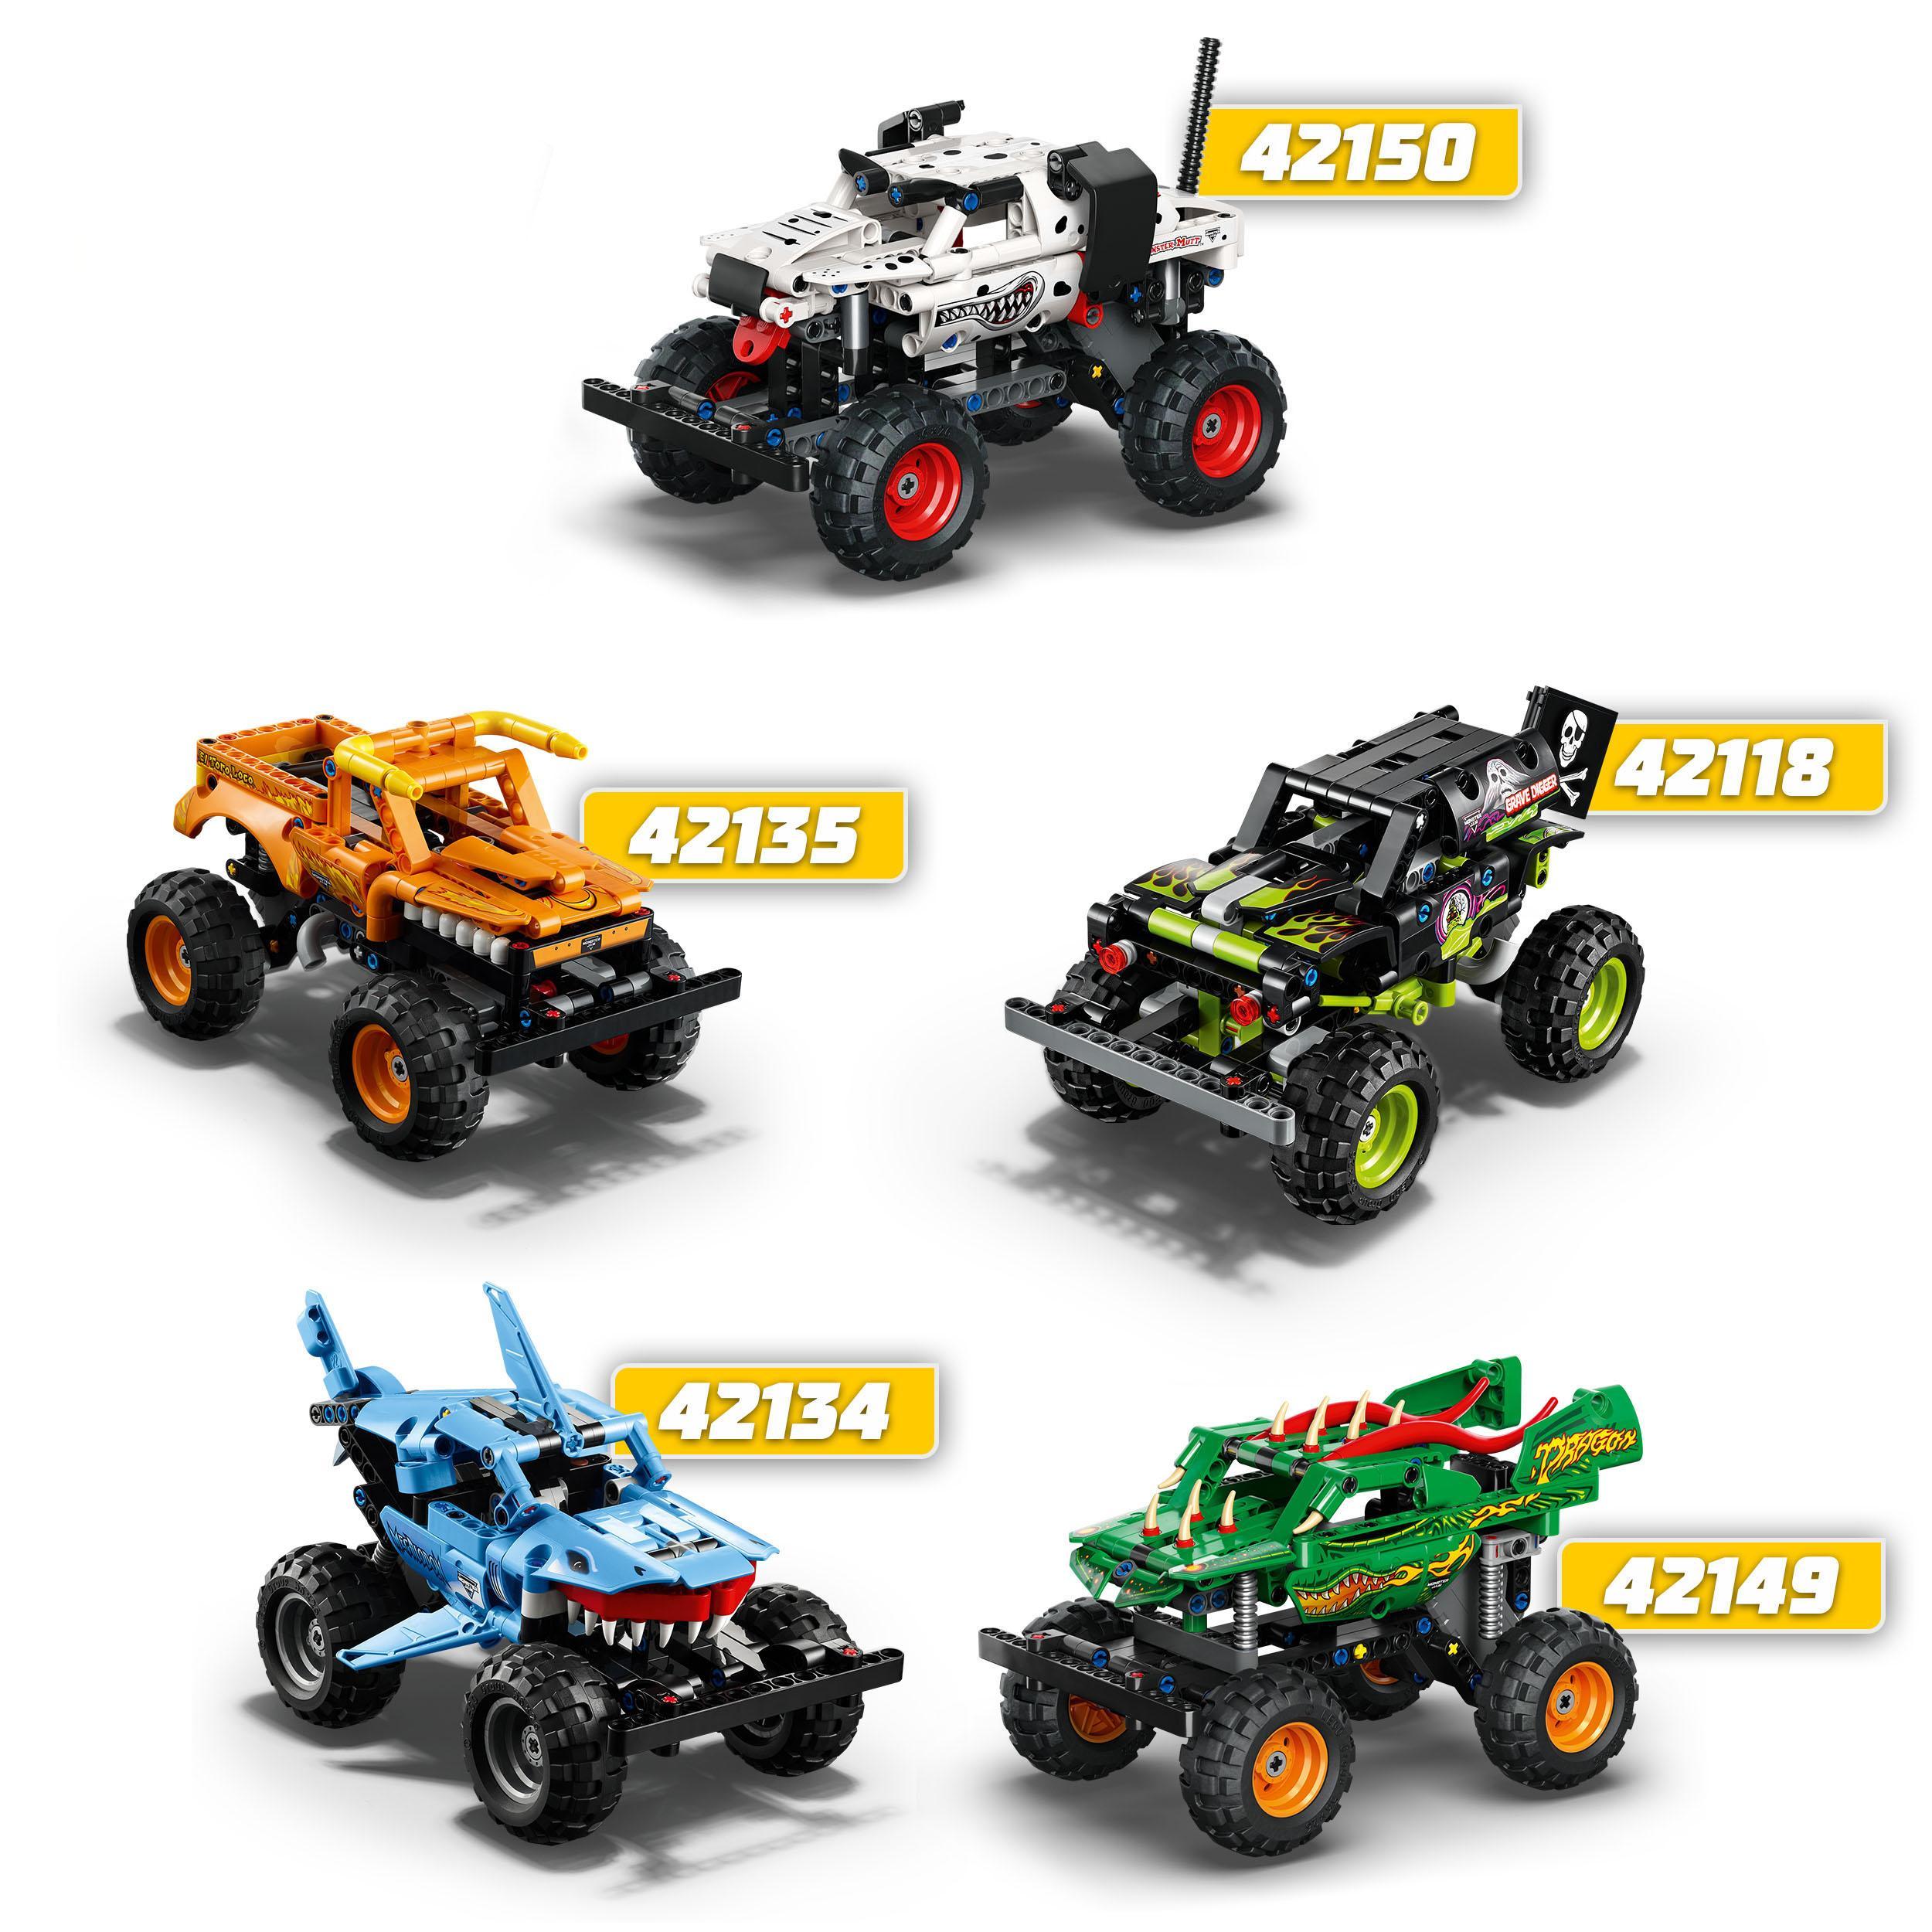 Lego technic 42150 monster mutt monster jam dalmata, set  2 in 1 con pull-back, auto offroad monster truck e camion giocattolo - LEGO TECHNIC